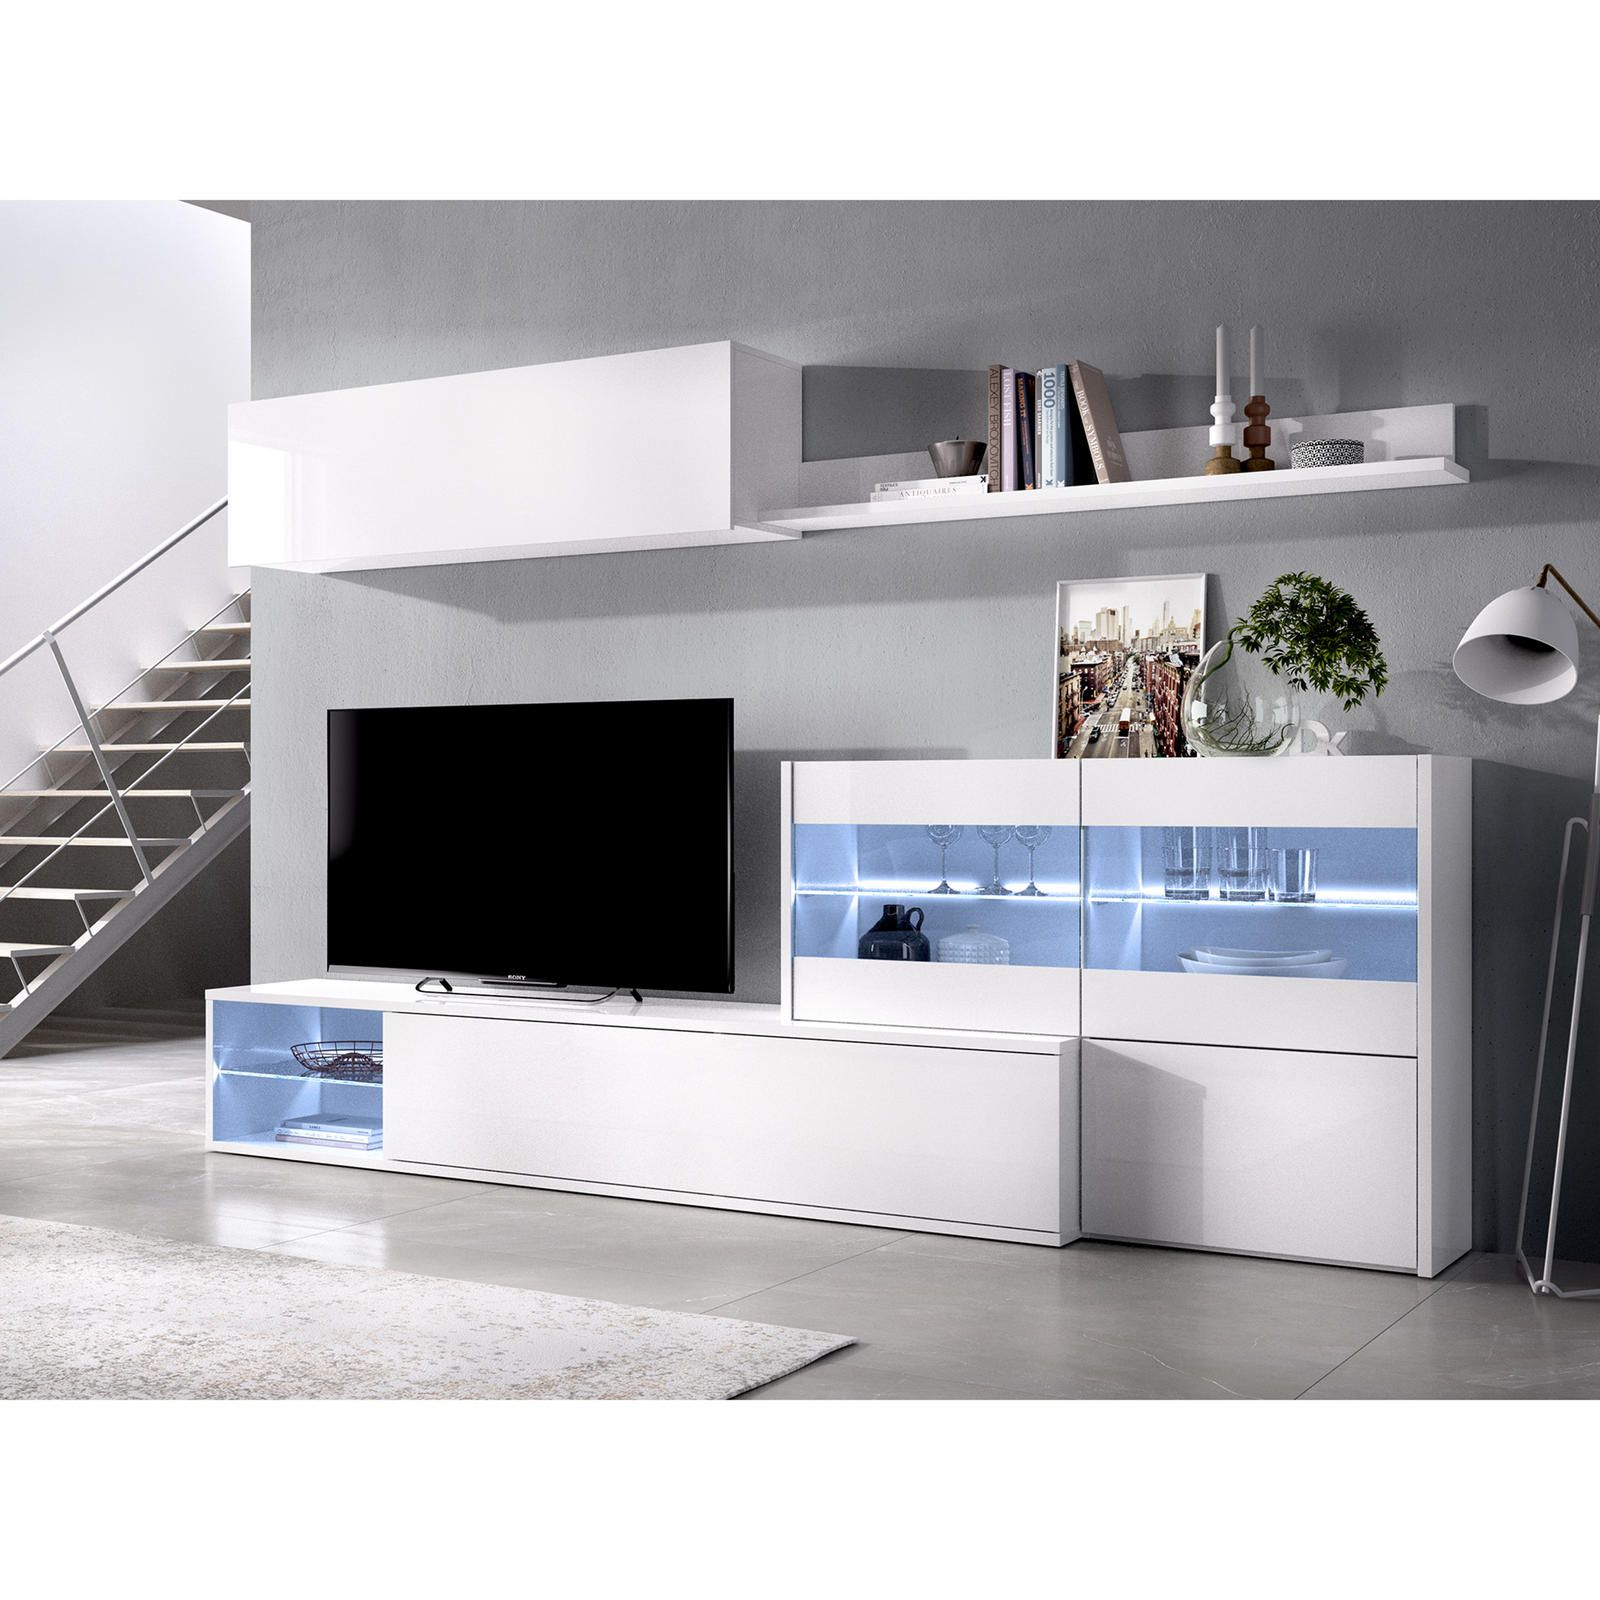 Aldo Obývací stěna, dva způsoby sestavení Uma glossy white - Nábytek ALDO